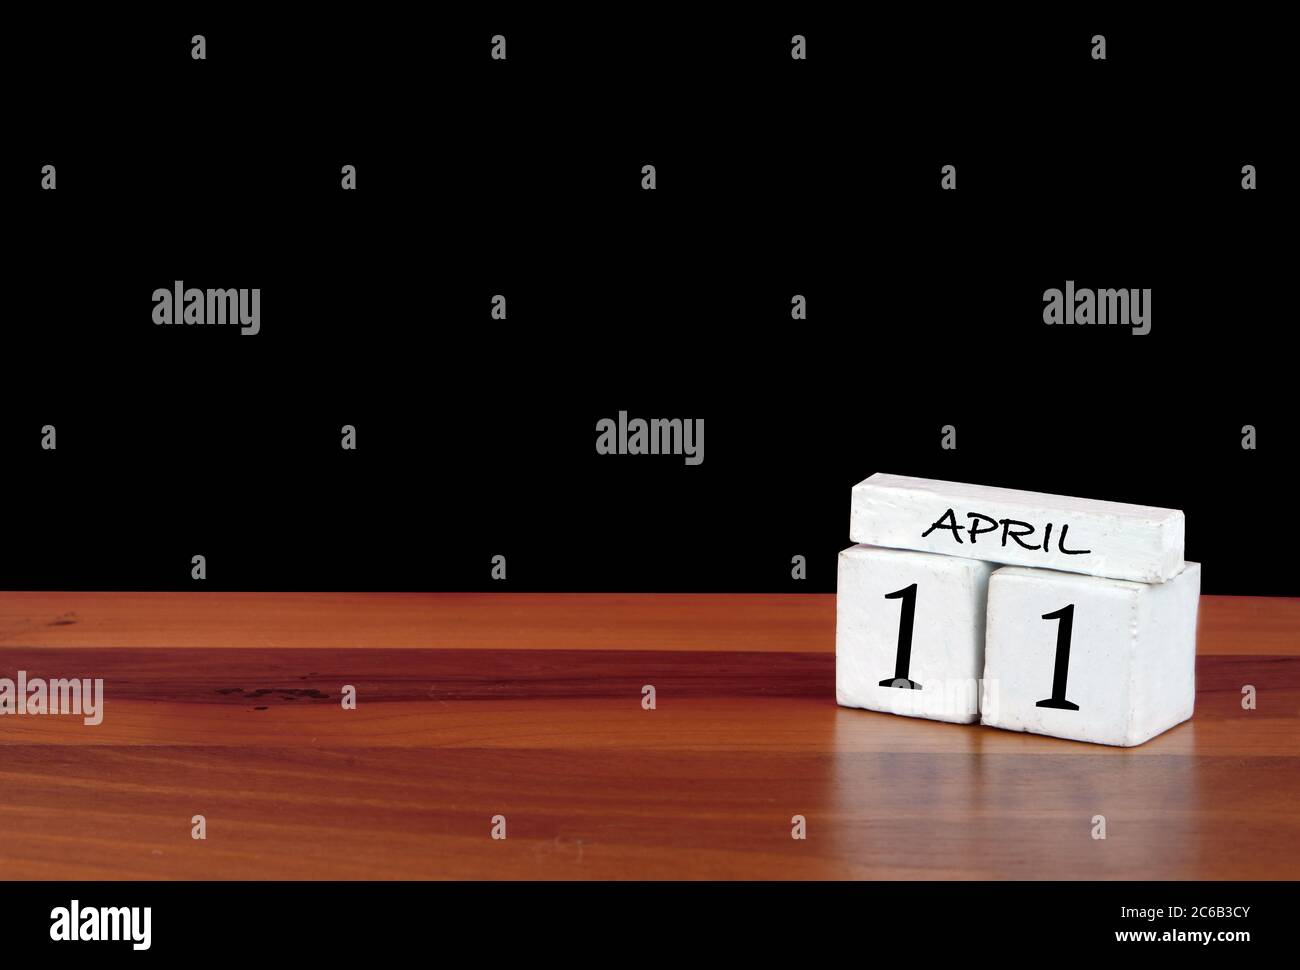 11 April Kalendermonat. 11 Tage im Monat. Reflektierter Kalender auf Holzboden mit schwarzem Hintergrund Stockfoto